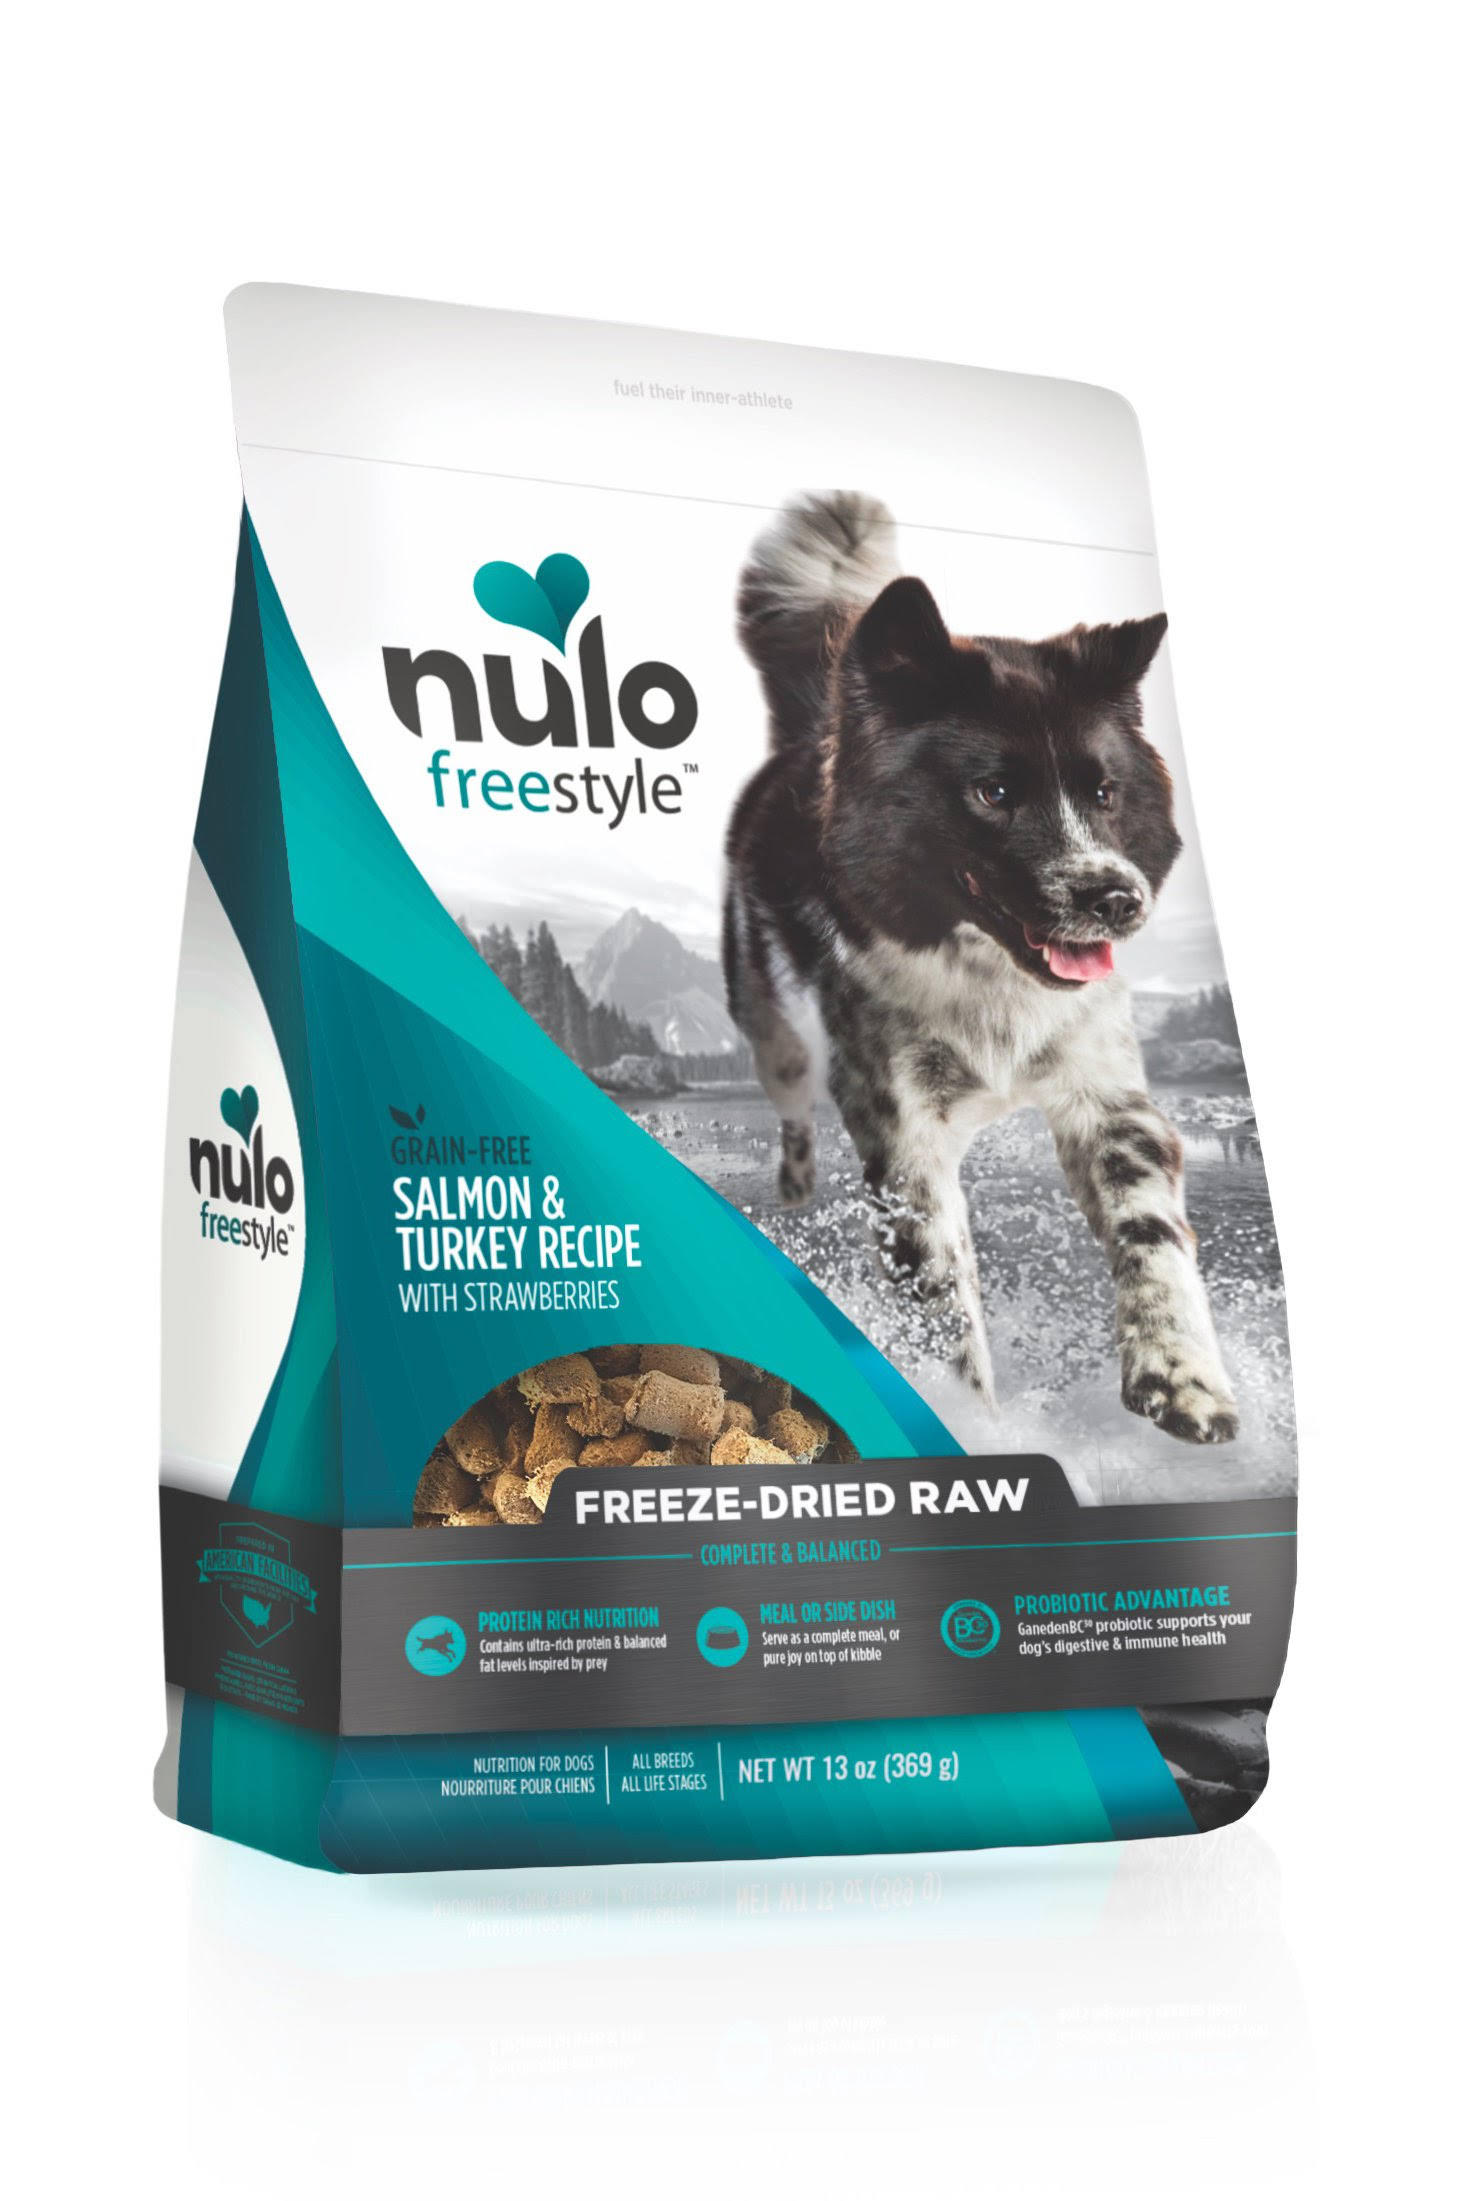 Nulo Freestyle Freeze-Dried Grain-Free Salmon, Turkey & Strawberry Dog Food 5 oz